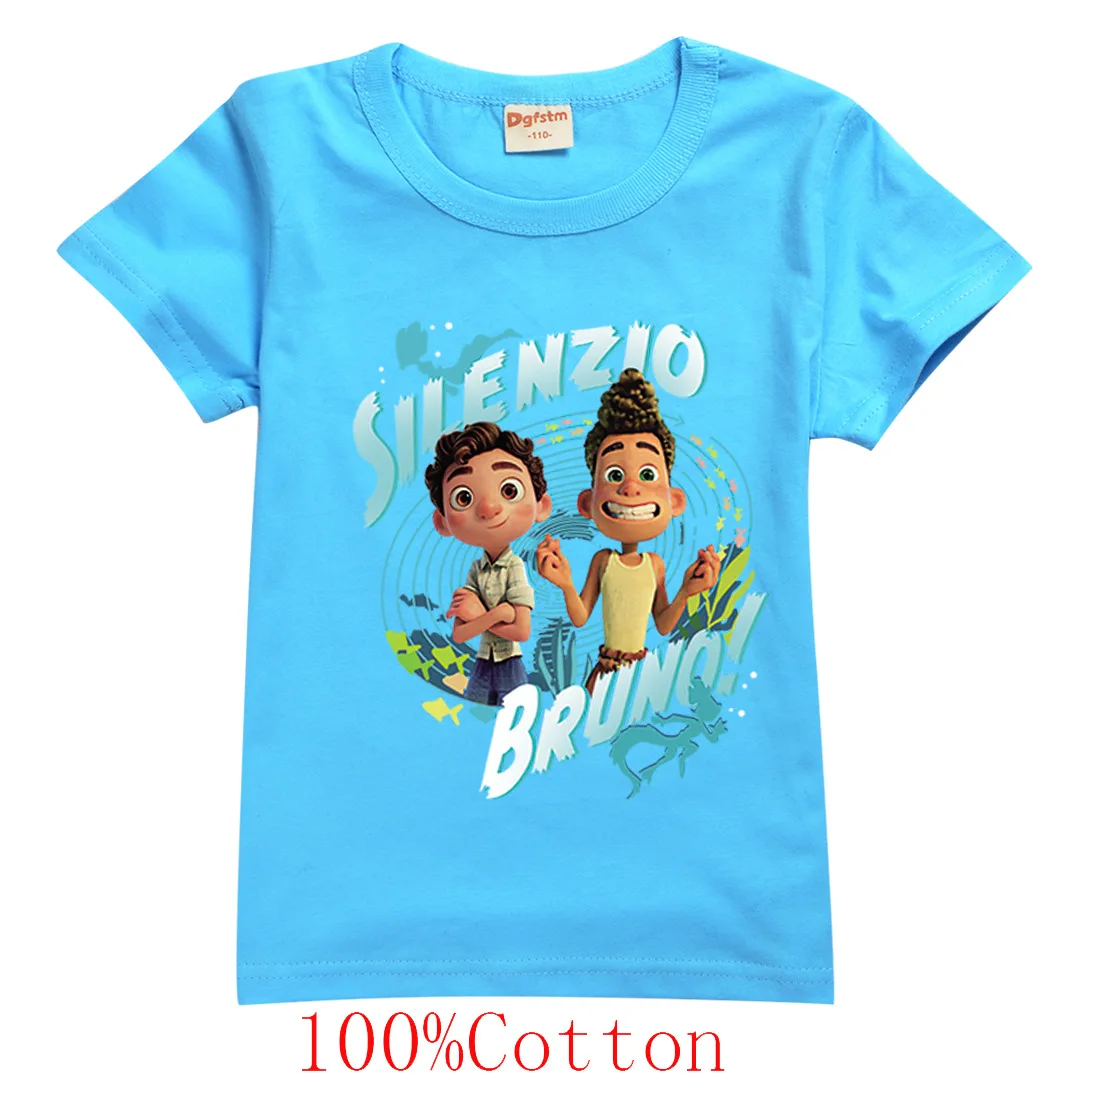 

Luca Boutique Детская одежда Одежда для младенцев мальчиков Подростковая Детская летняя футболка для маленьких девочек Графические футболки дет...